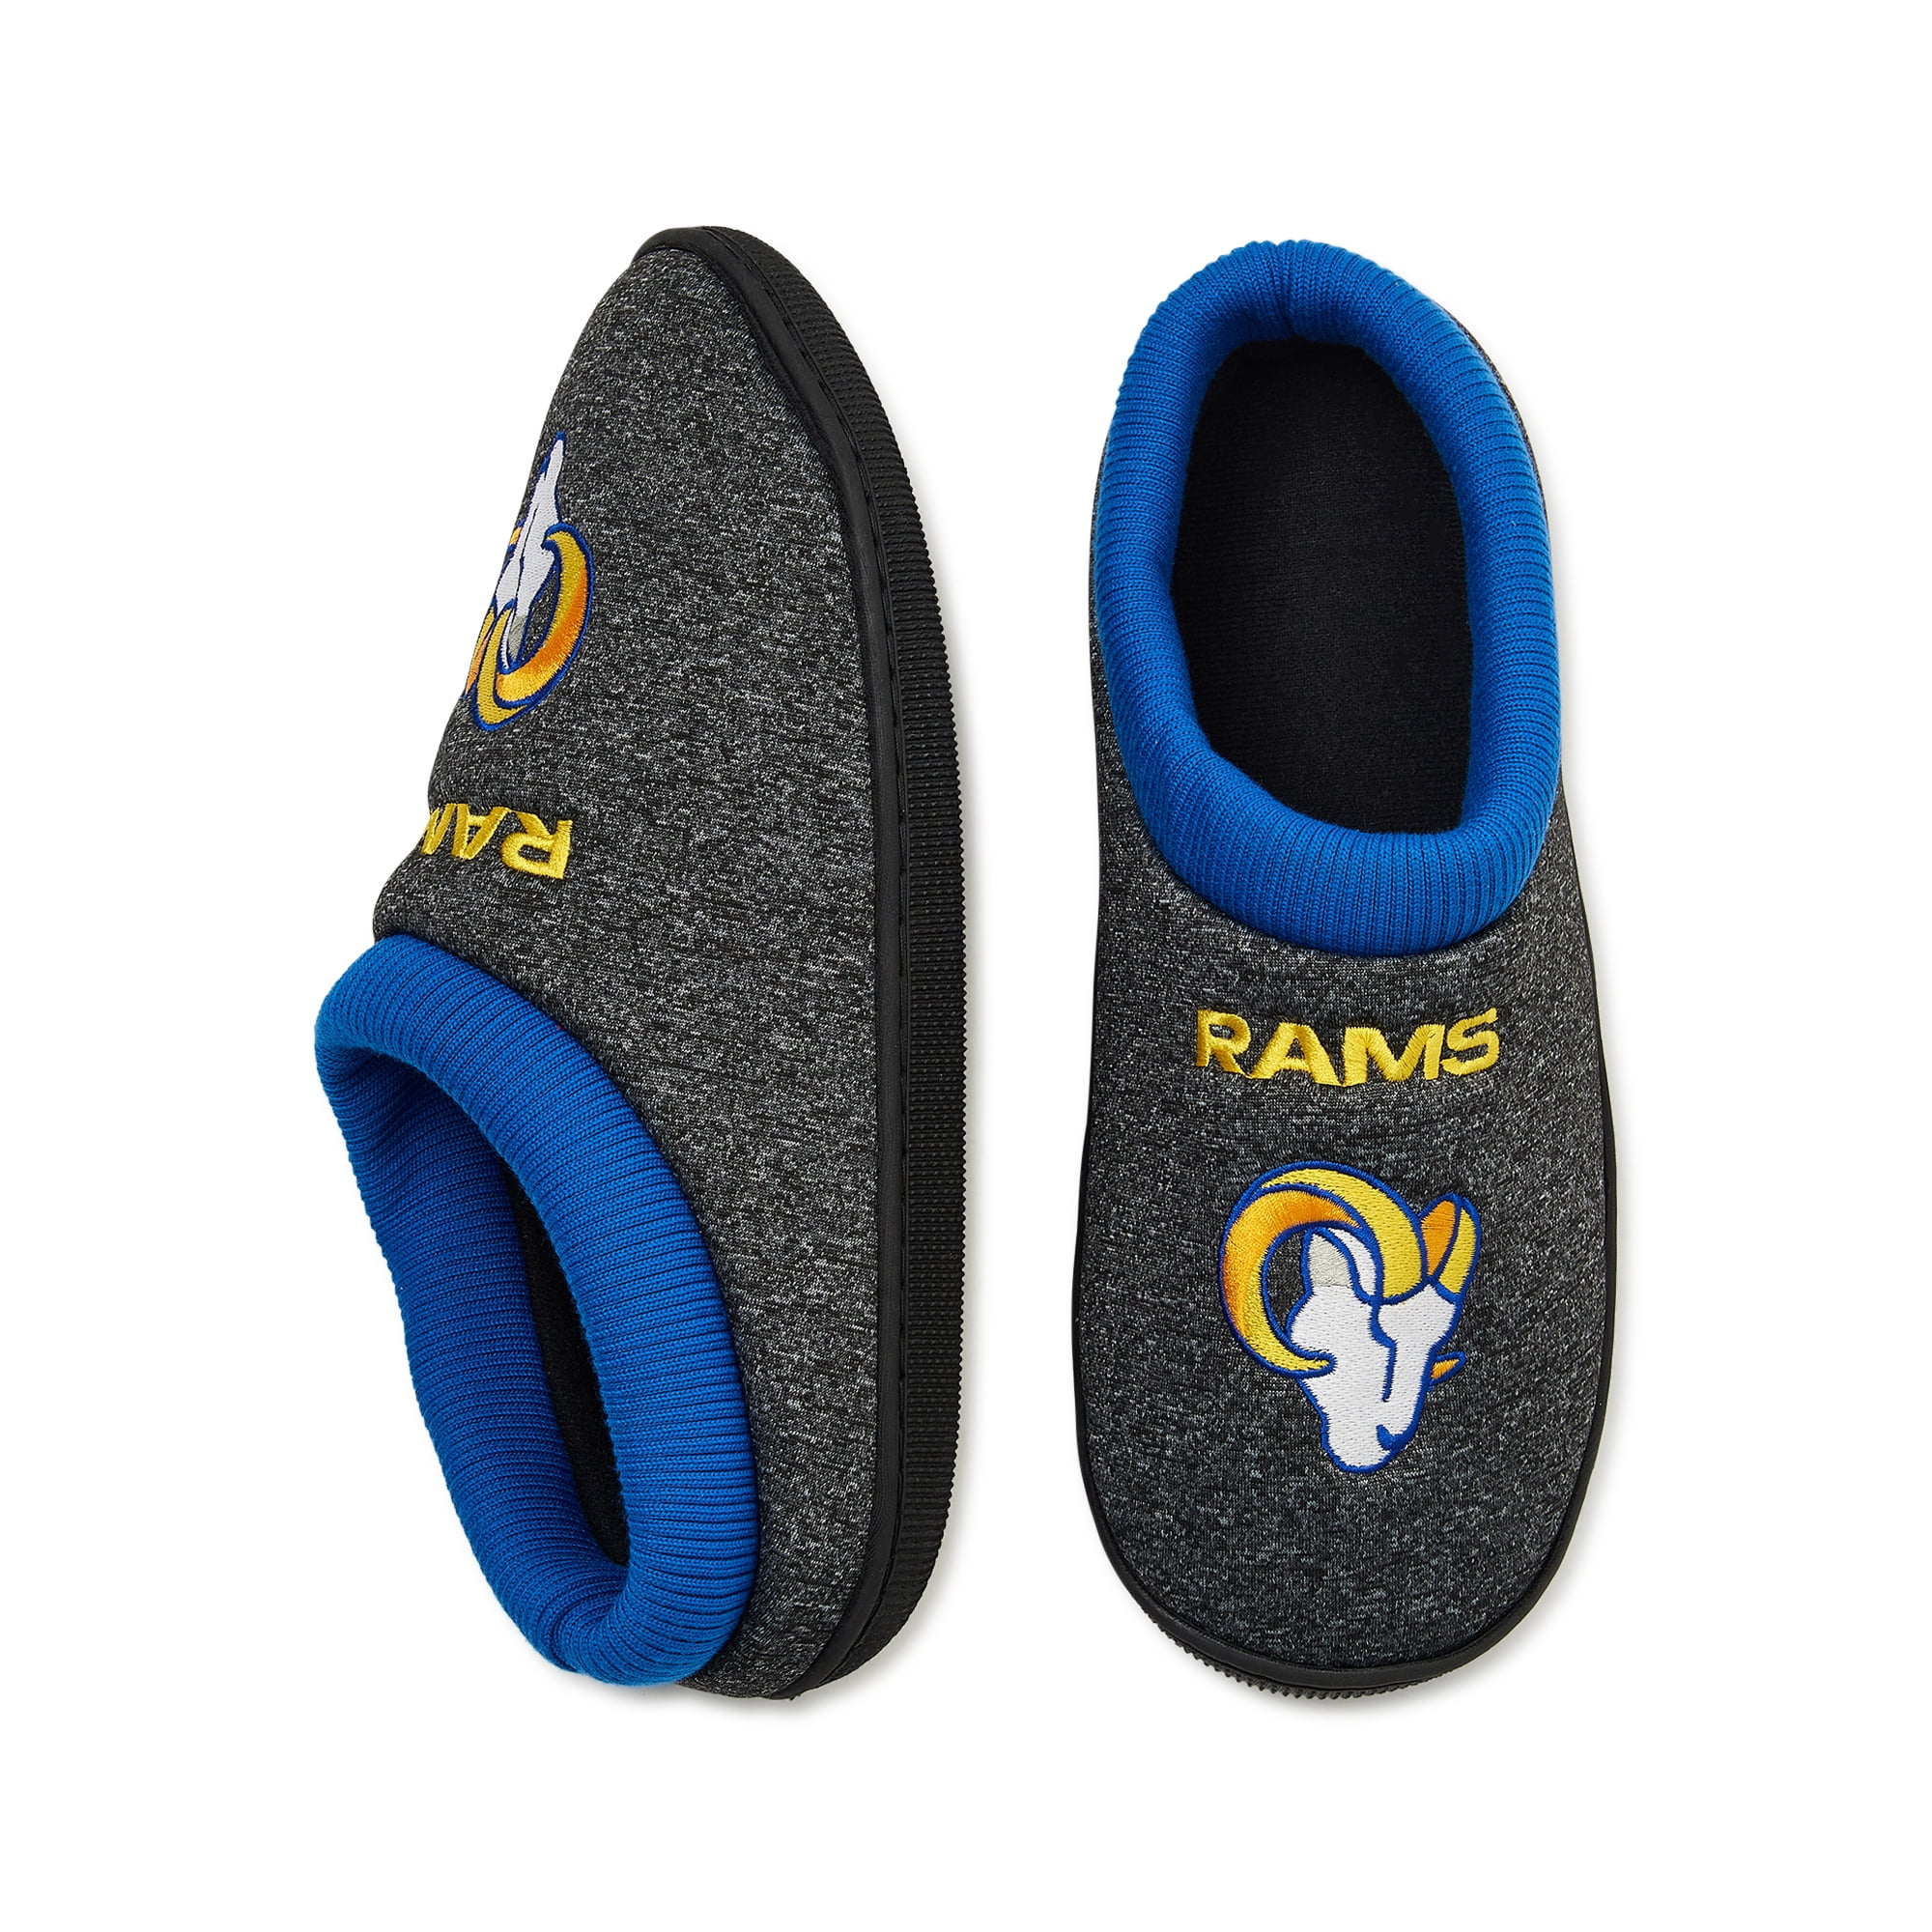 FOCO Los Angeles Rams Men's Cup Sole Slippers